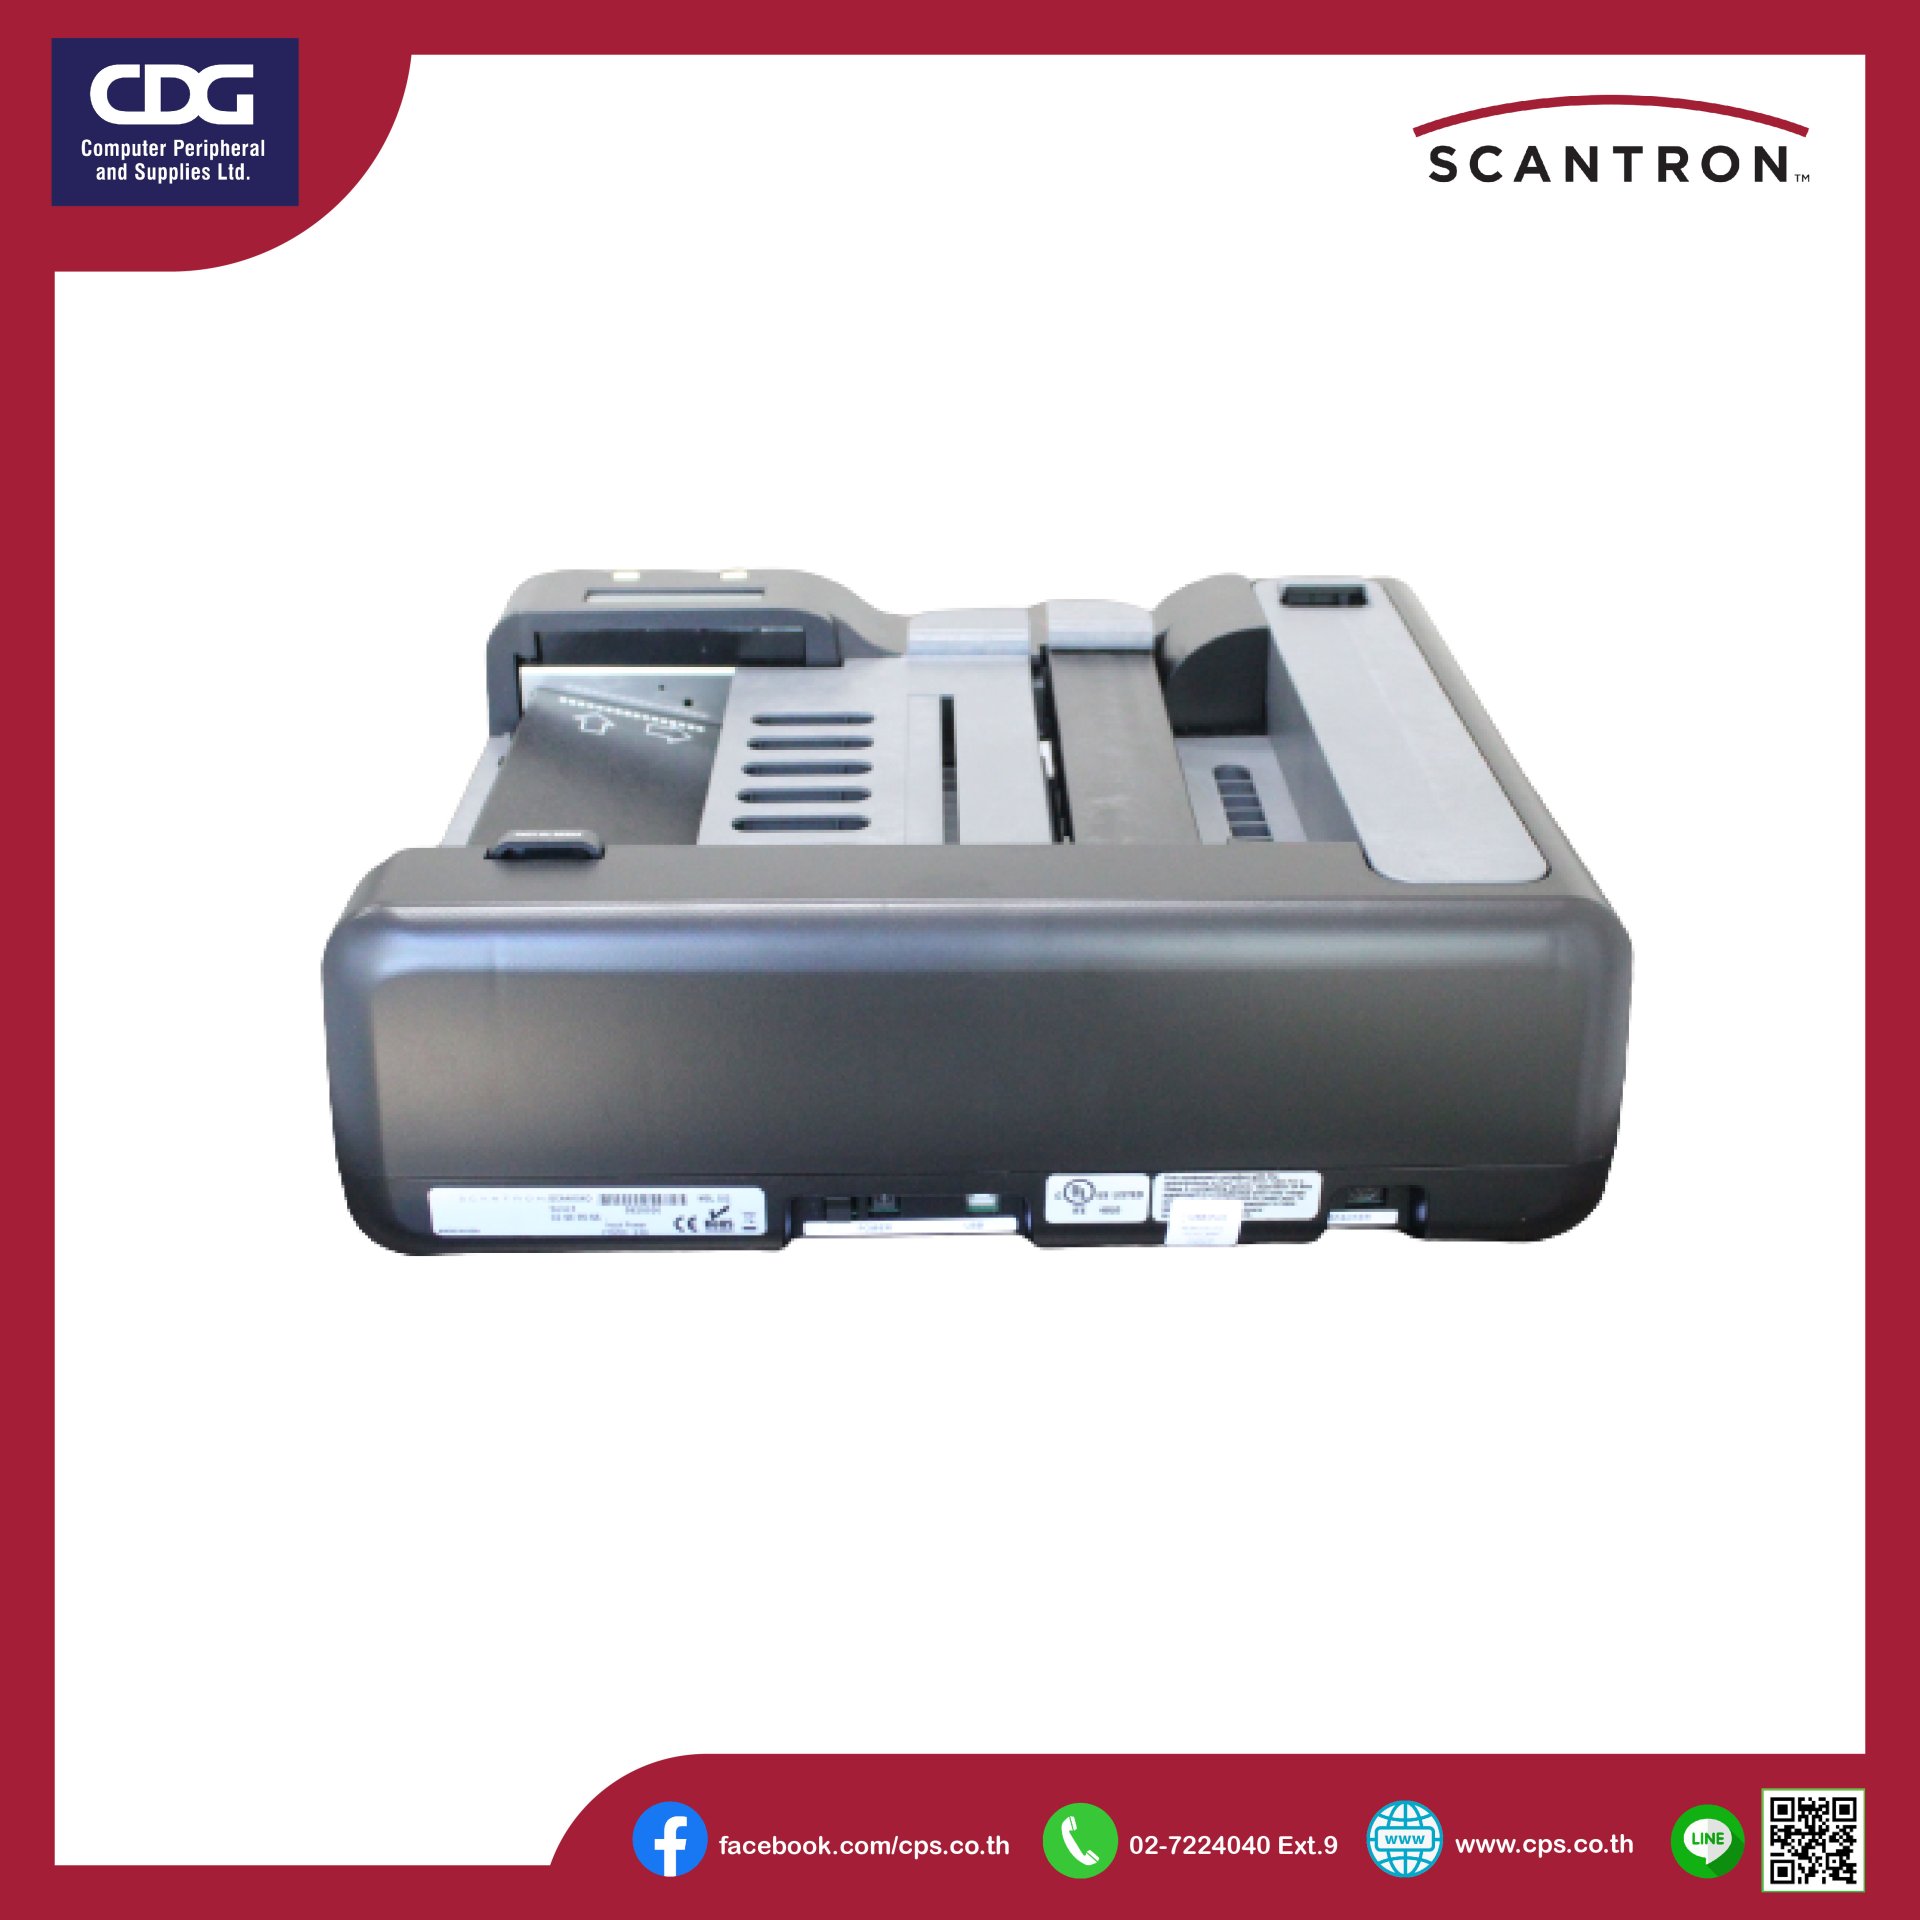 OpScan® 4ES OMR Scanner